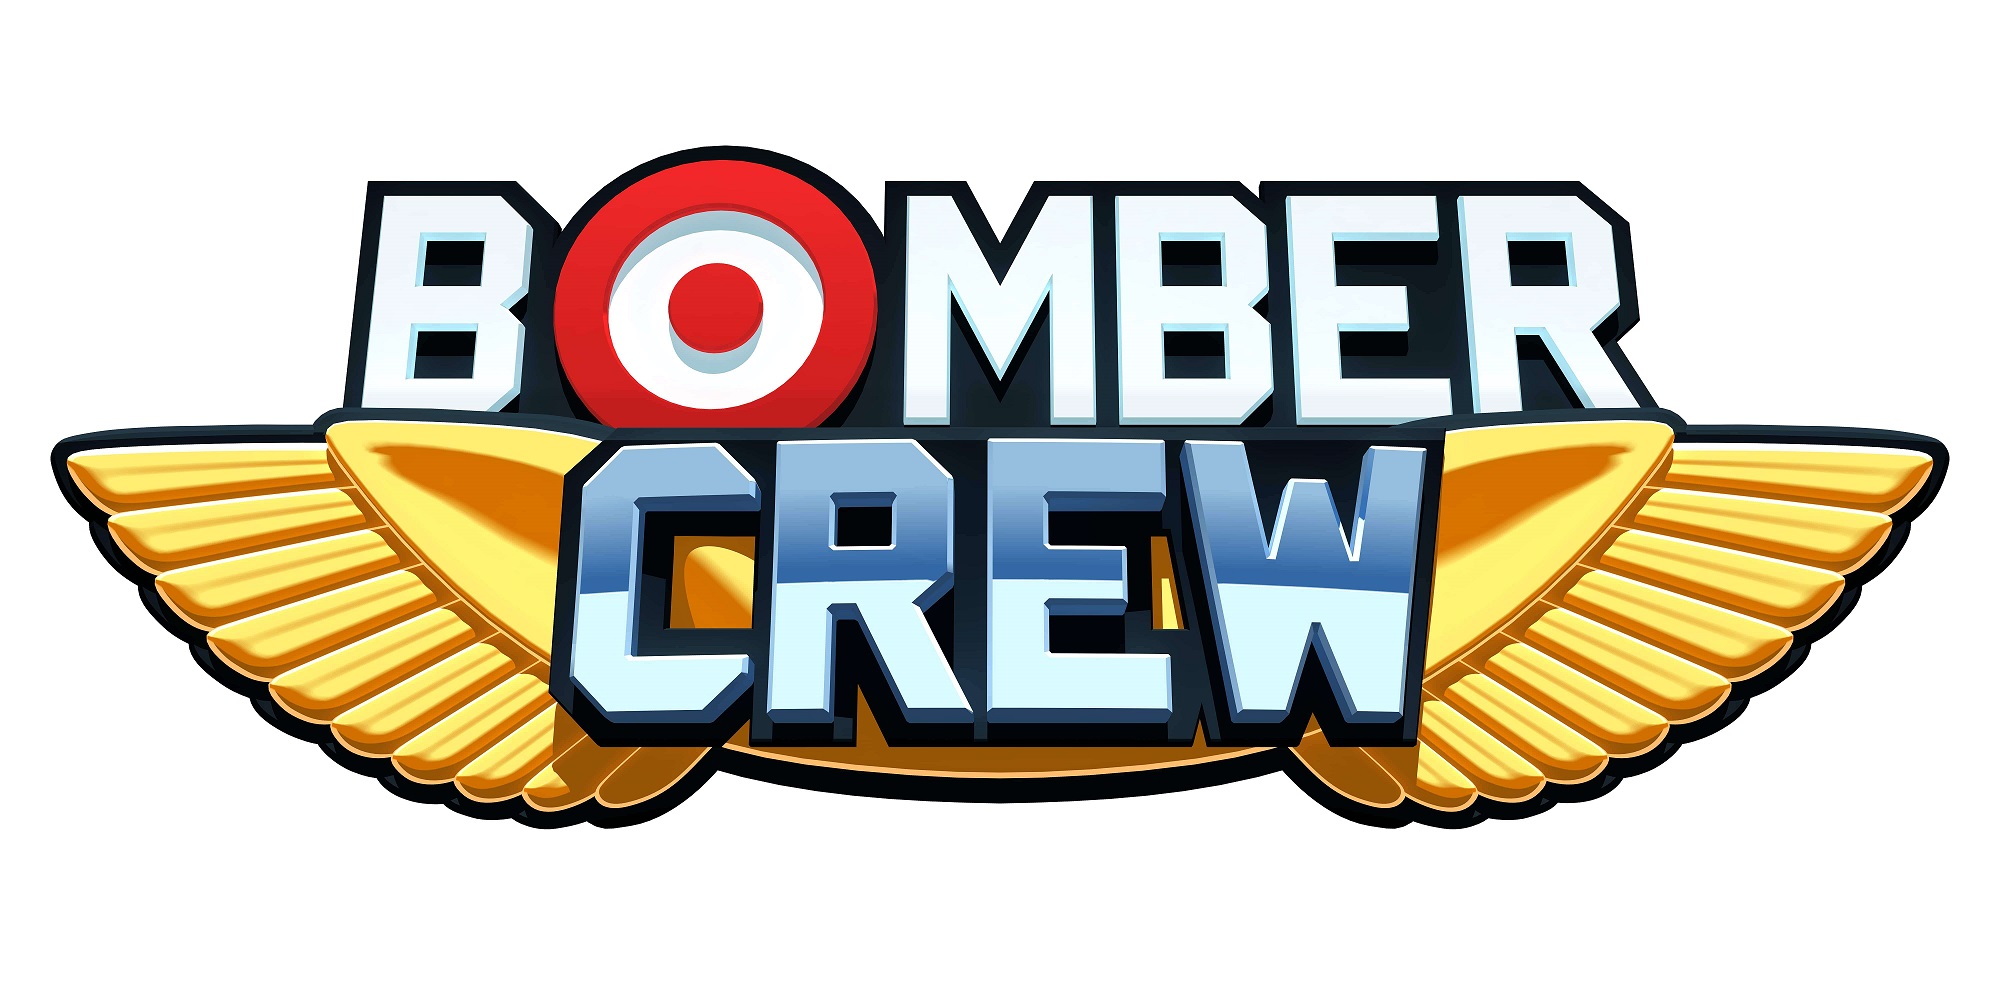 Bomber crew стим фото 26